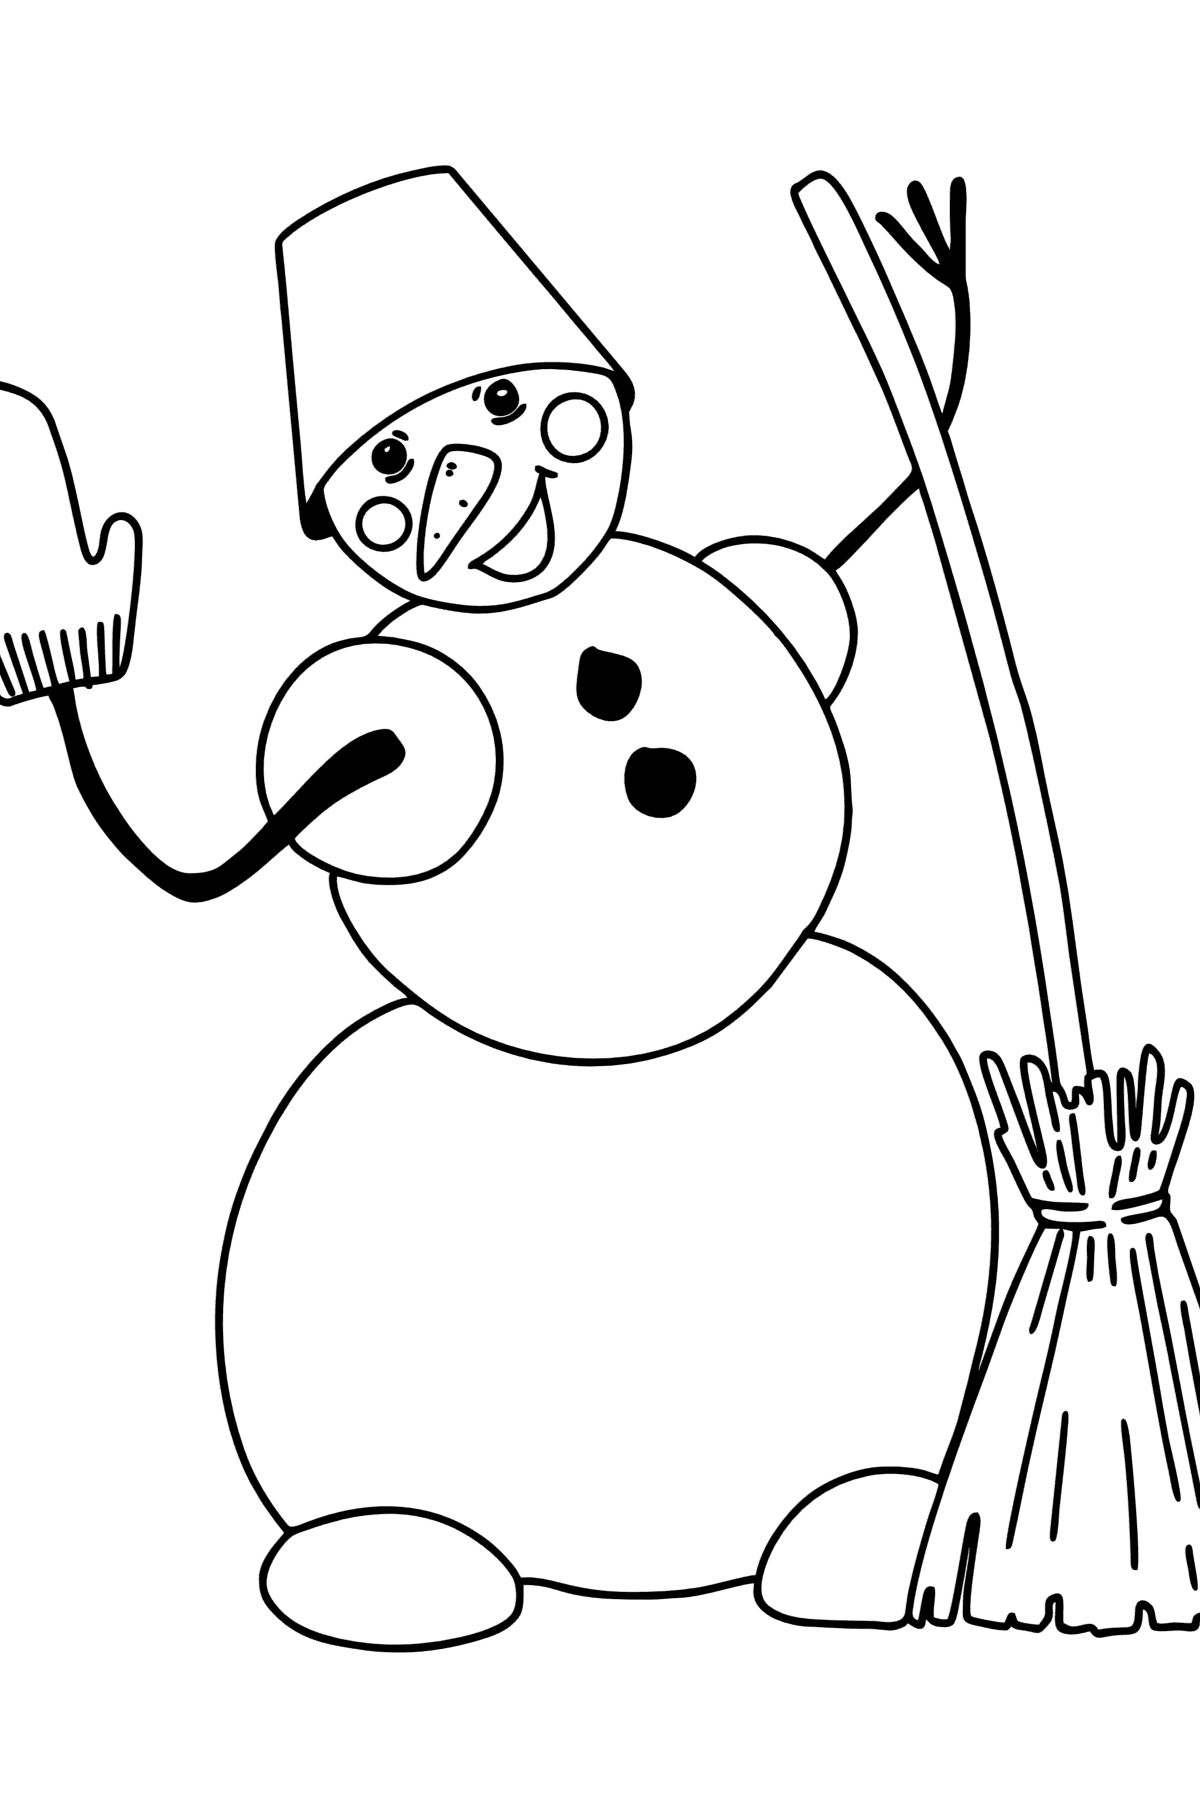 Раскраска Снеговик с метлой - Картинки для Детей